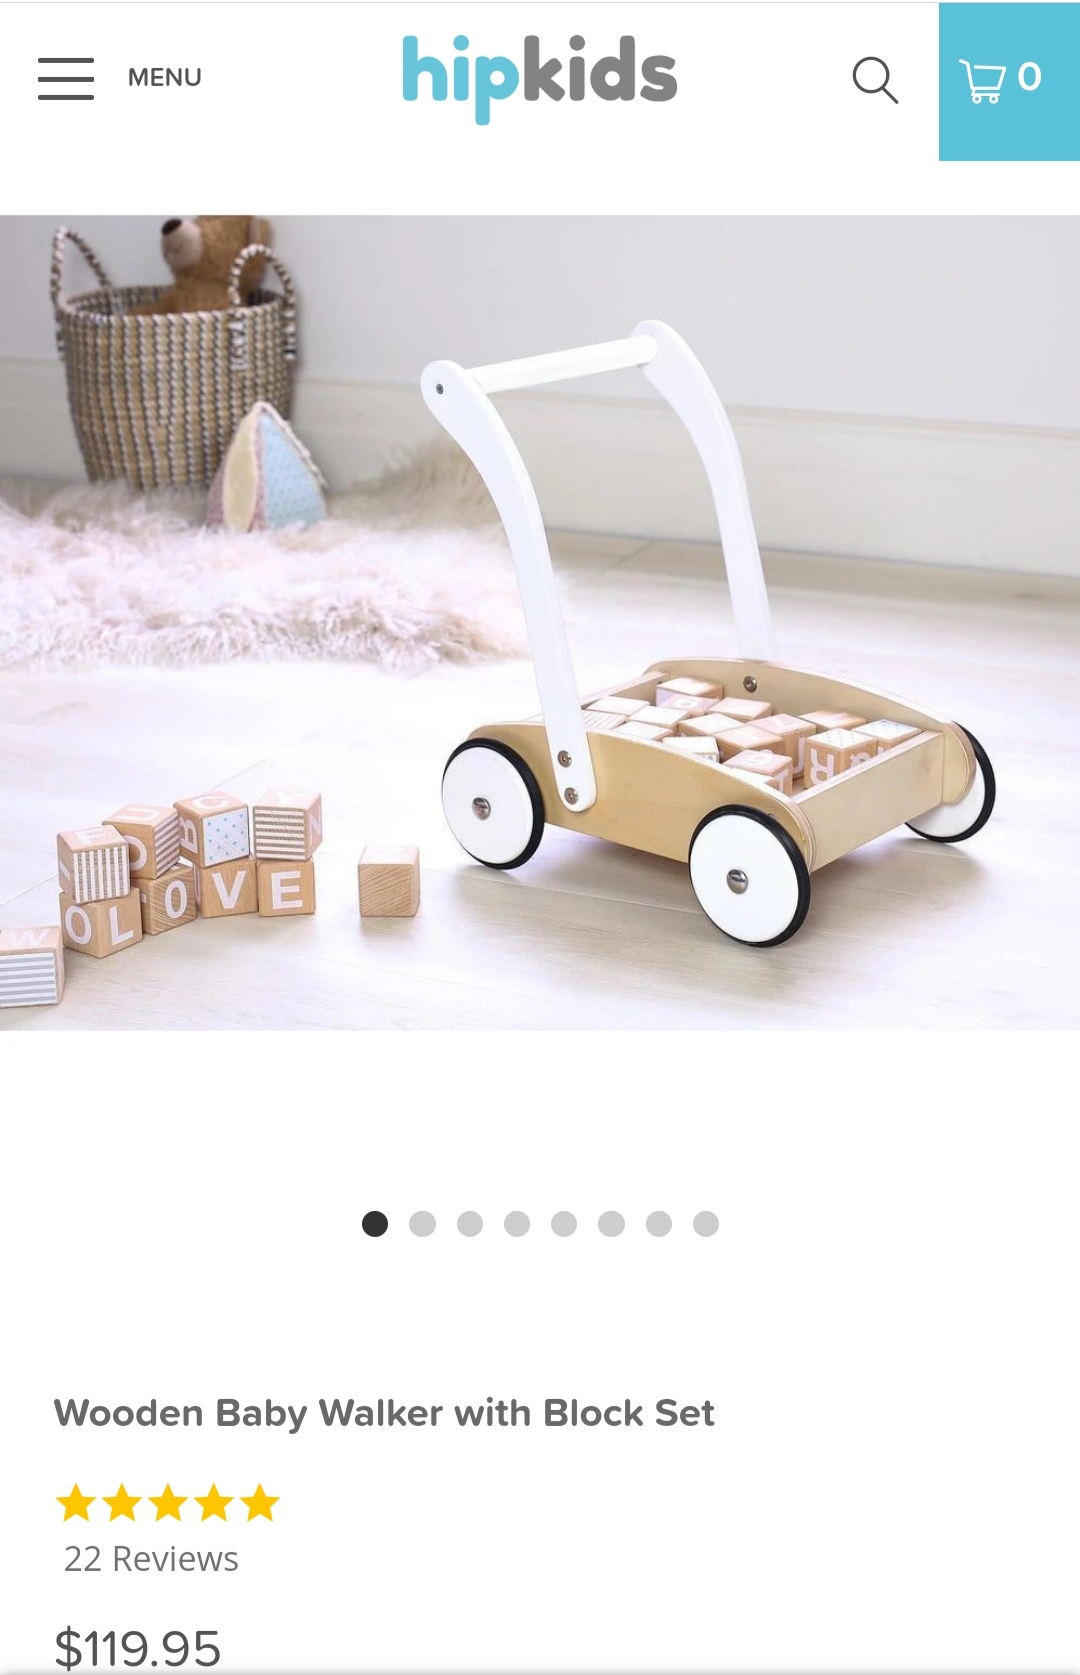 Wooden baby walker with block set